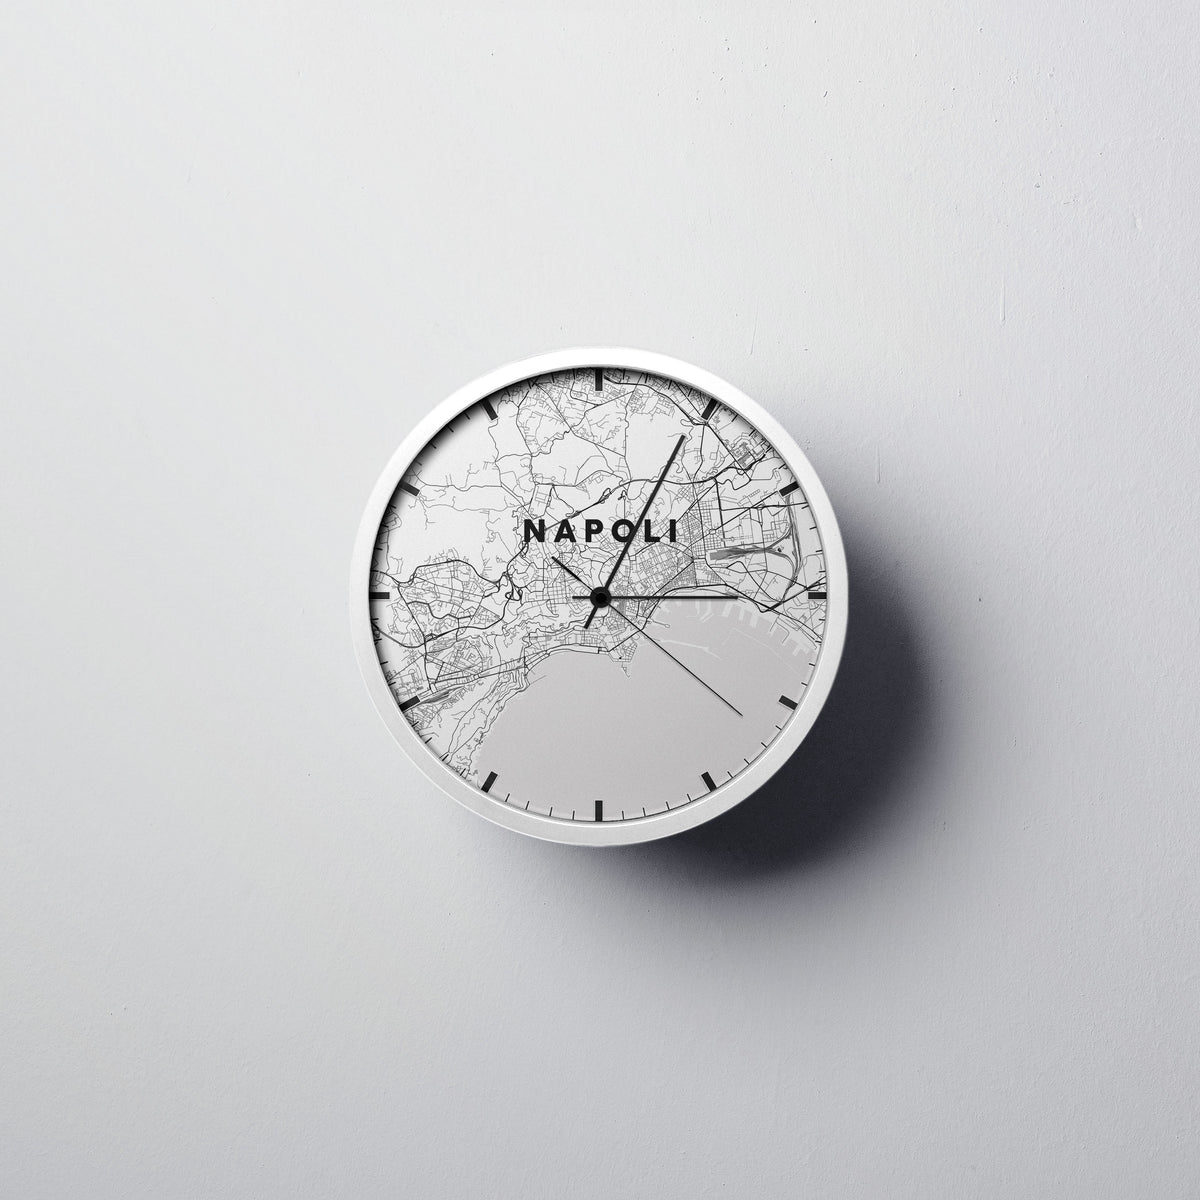 Napoli Wall Clock